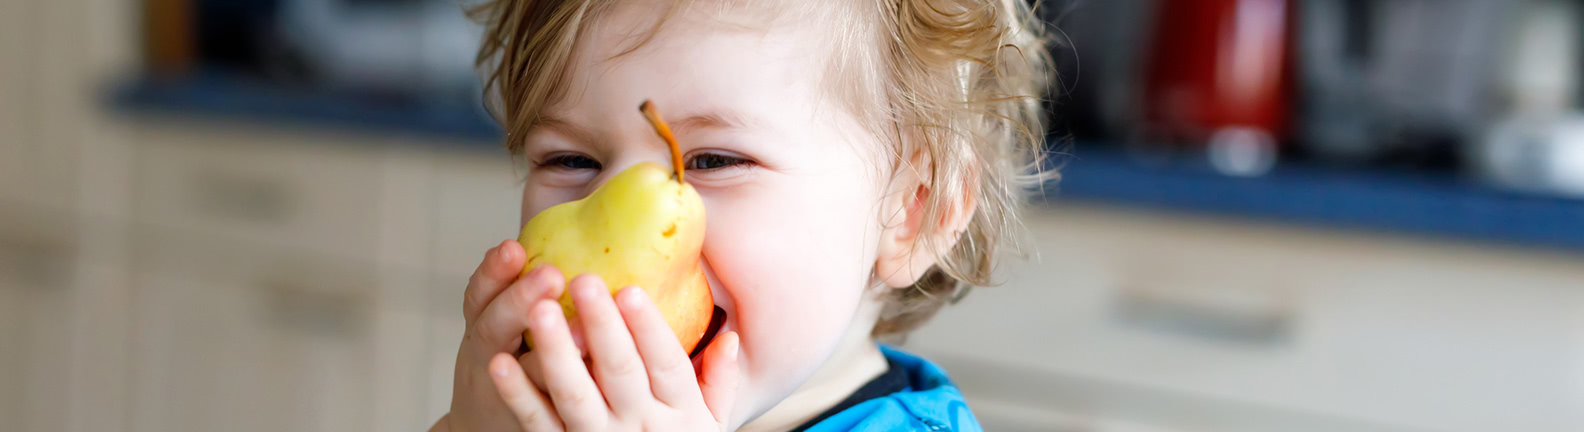 Toddler eating pear 